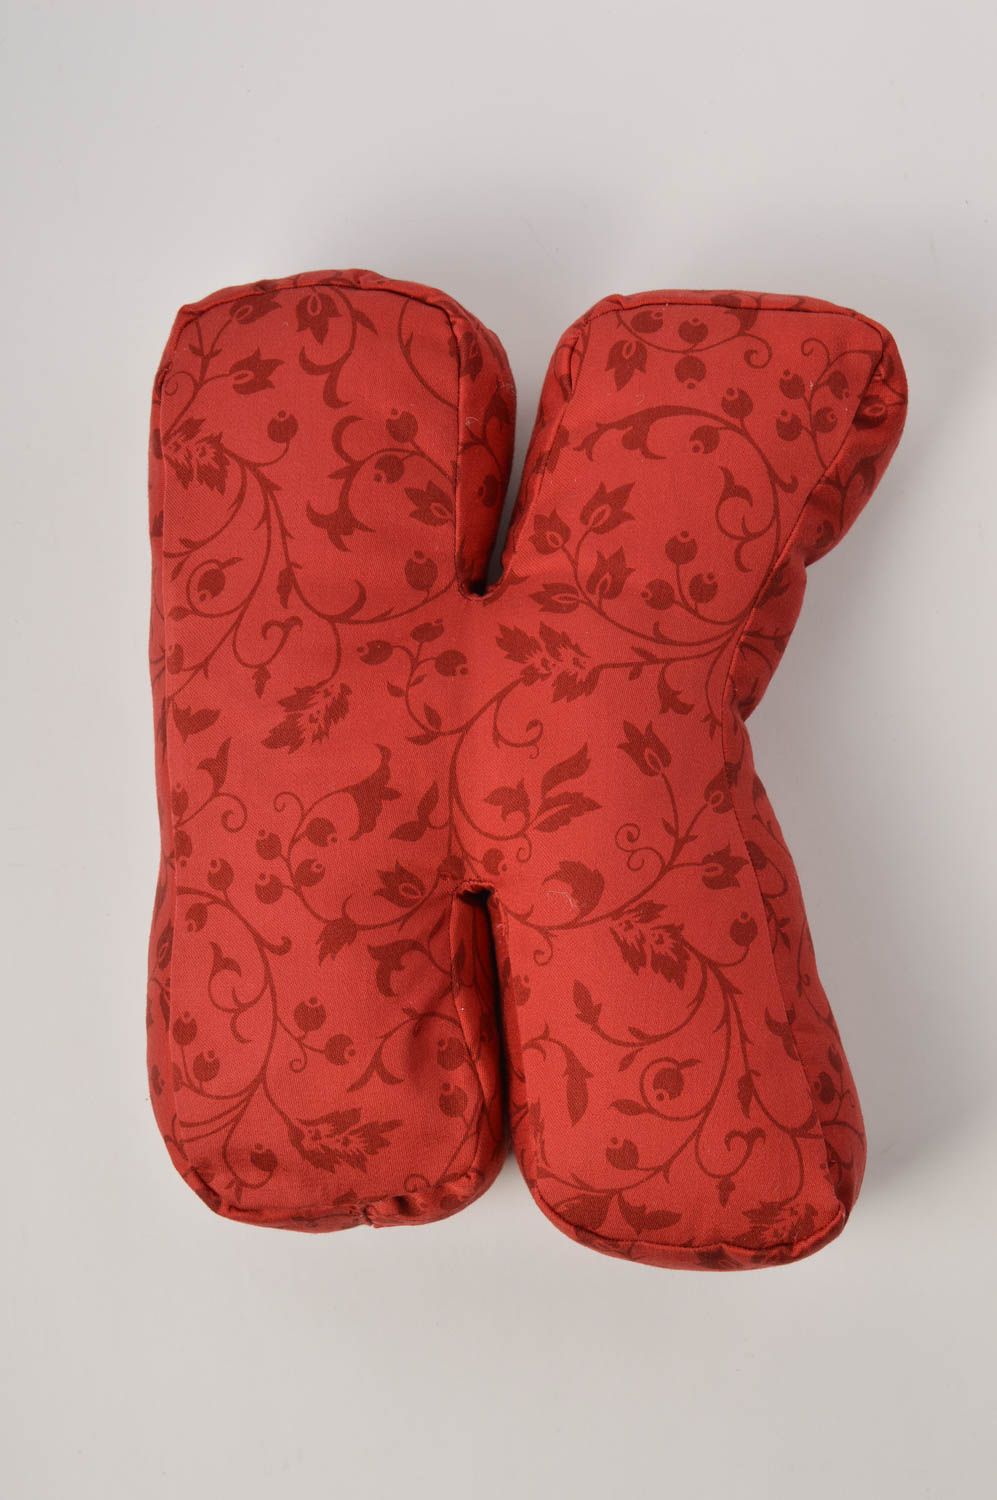 Декоративная подушка ручной работы подушка-буква из жаккарда мягкая буква К фото 3